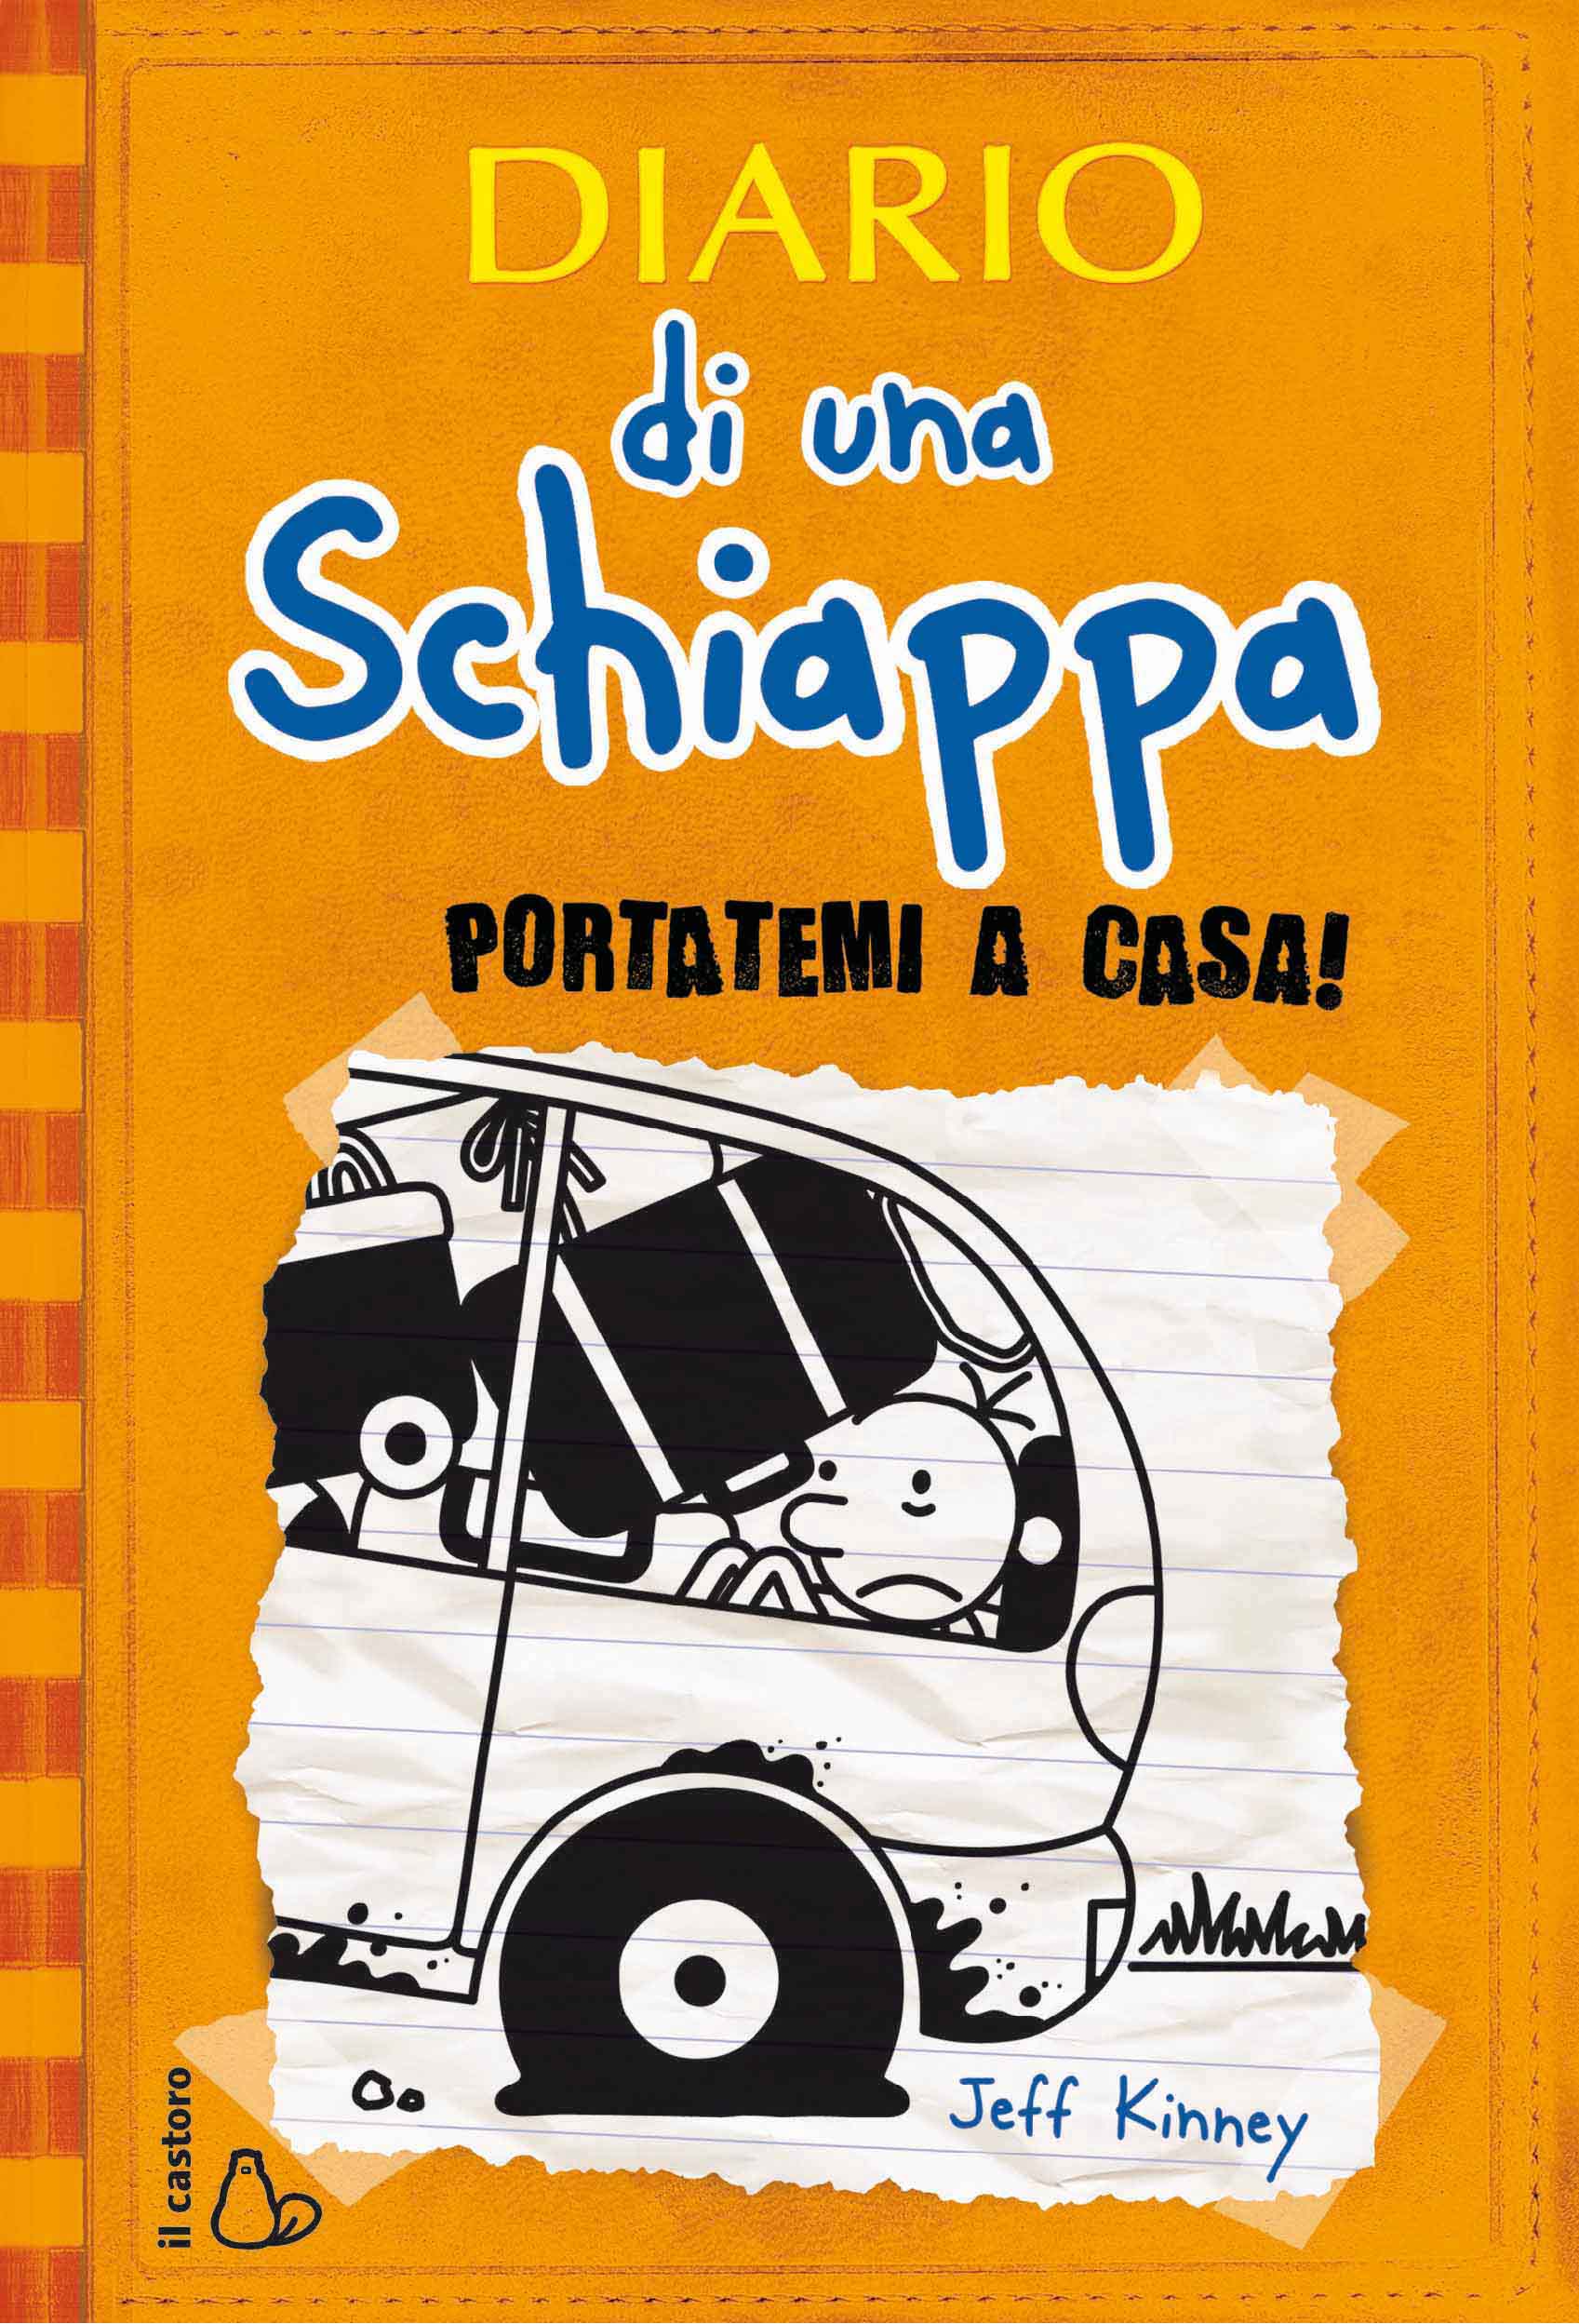 Diario_Schiappa9_Cover